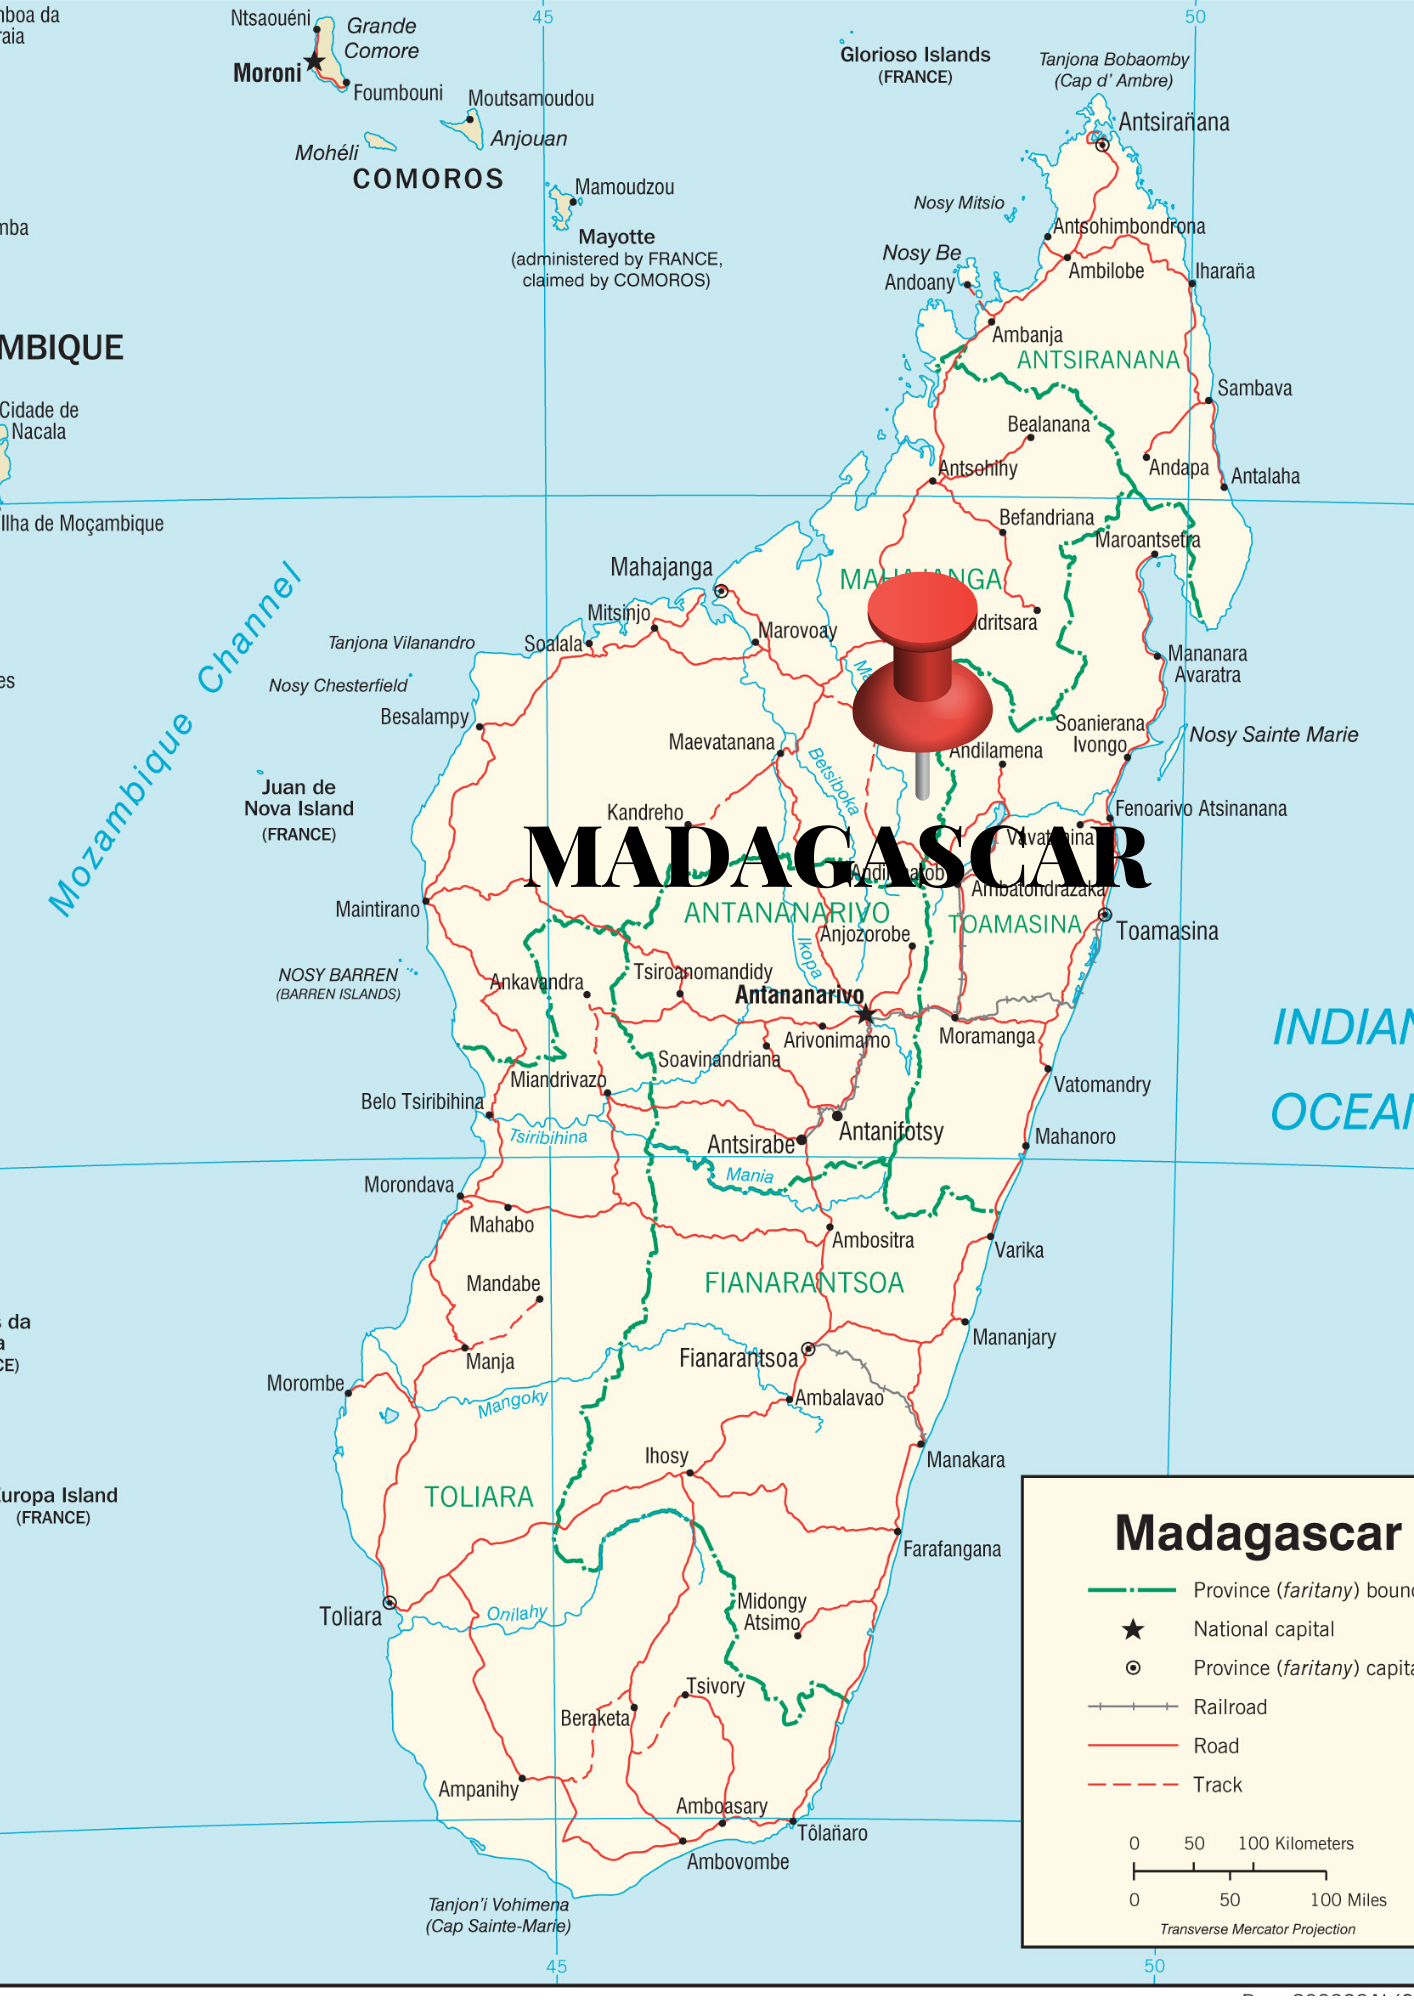 madagascar_mapa-3.png